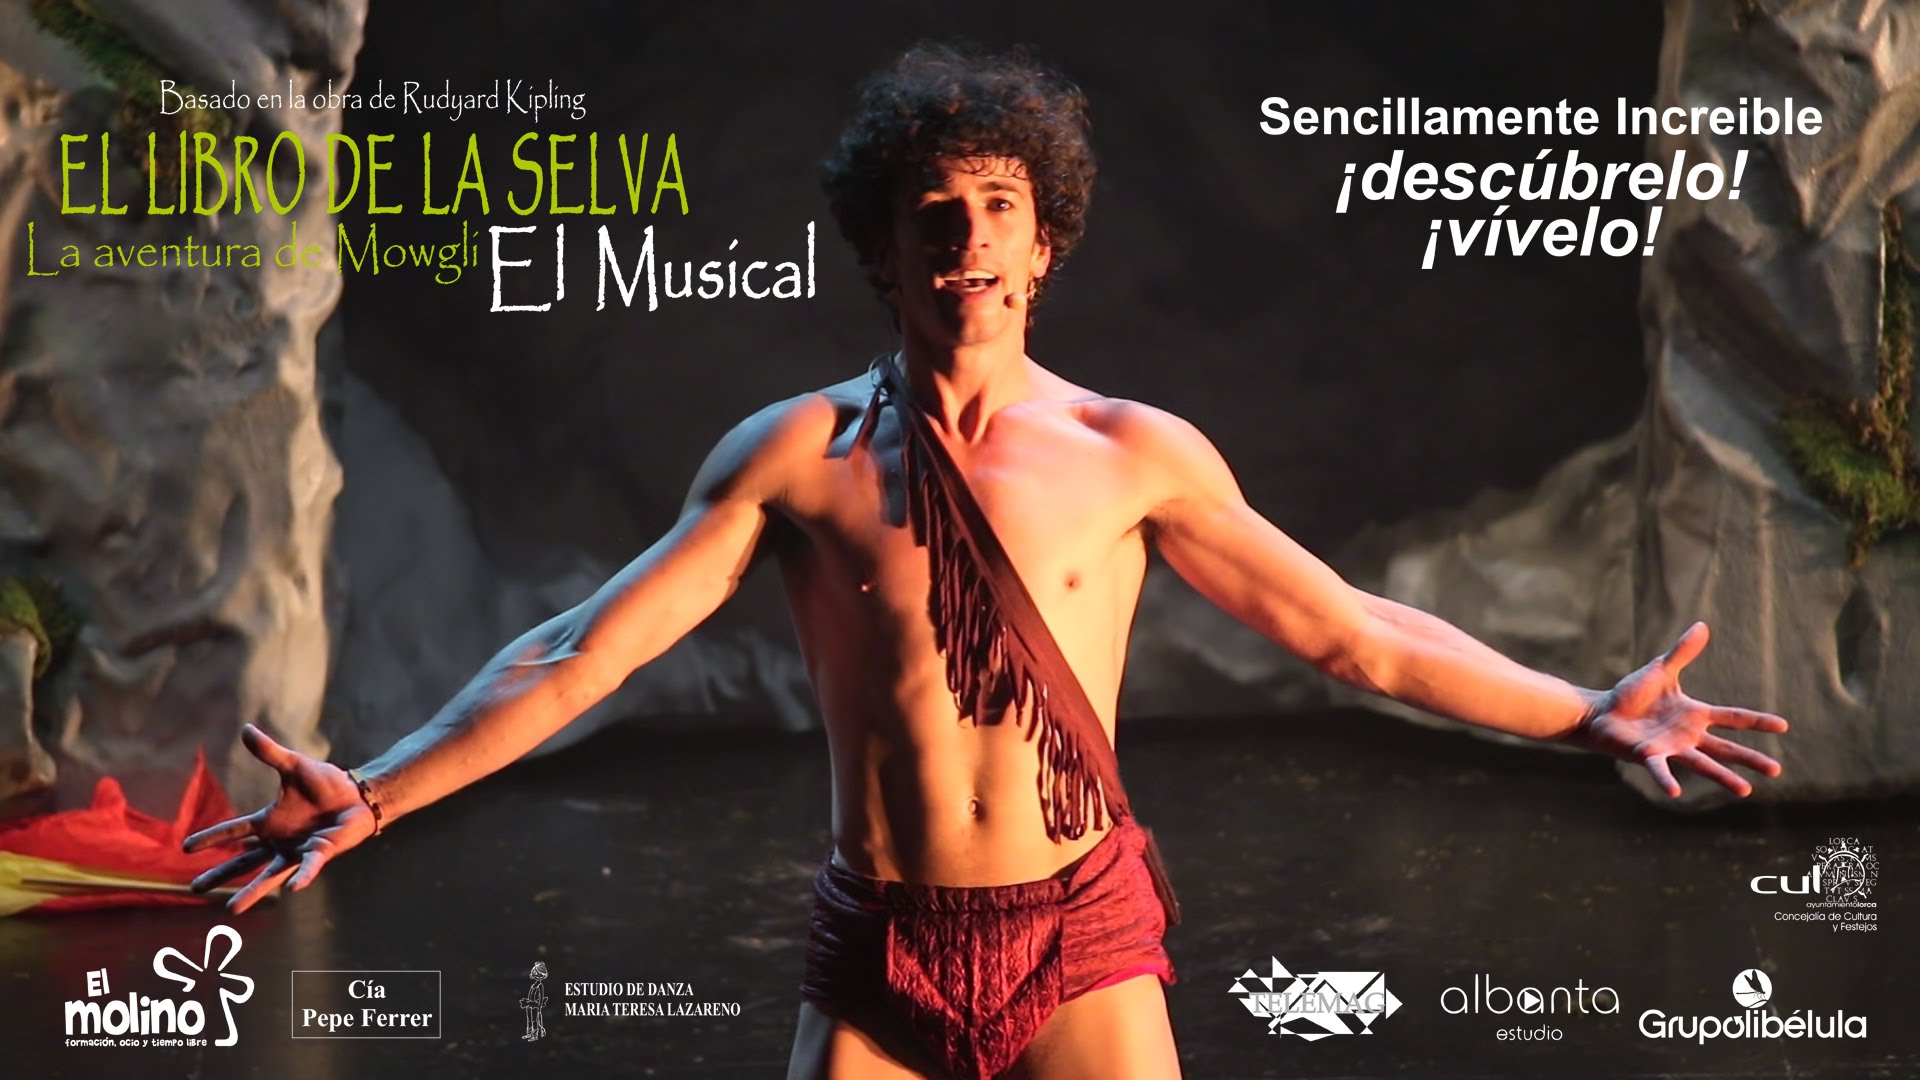 ‘El libro de la Selva’ el Musical en Cartagena